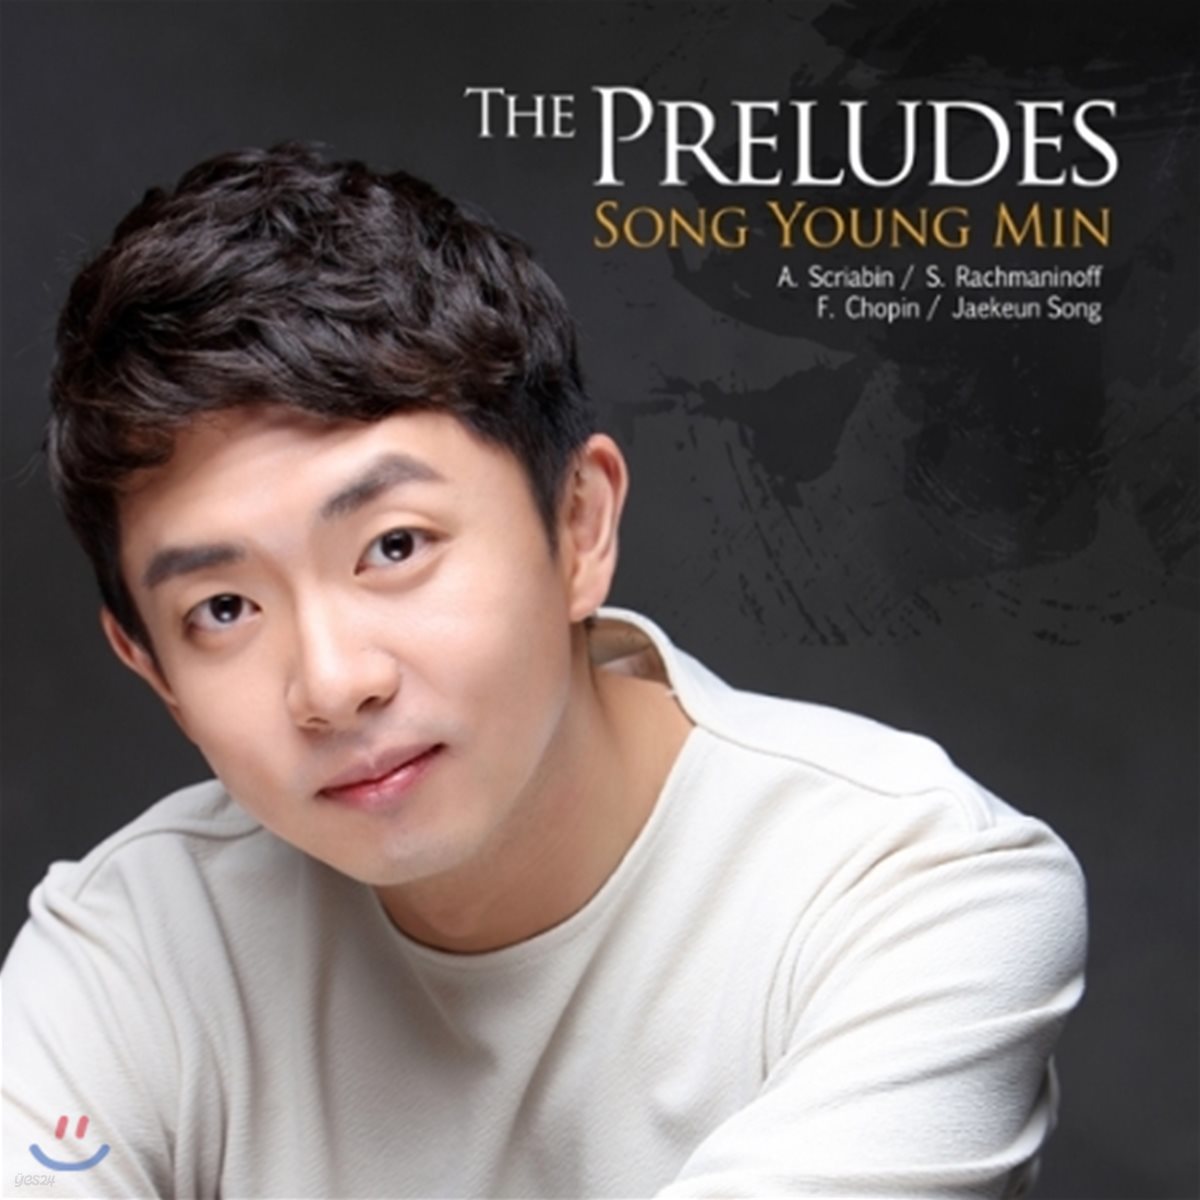 송영민 - The Preludes (스크리아빈 / 라흐마니노프 / 쇼팽 / 송재근: 전주곡)